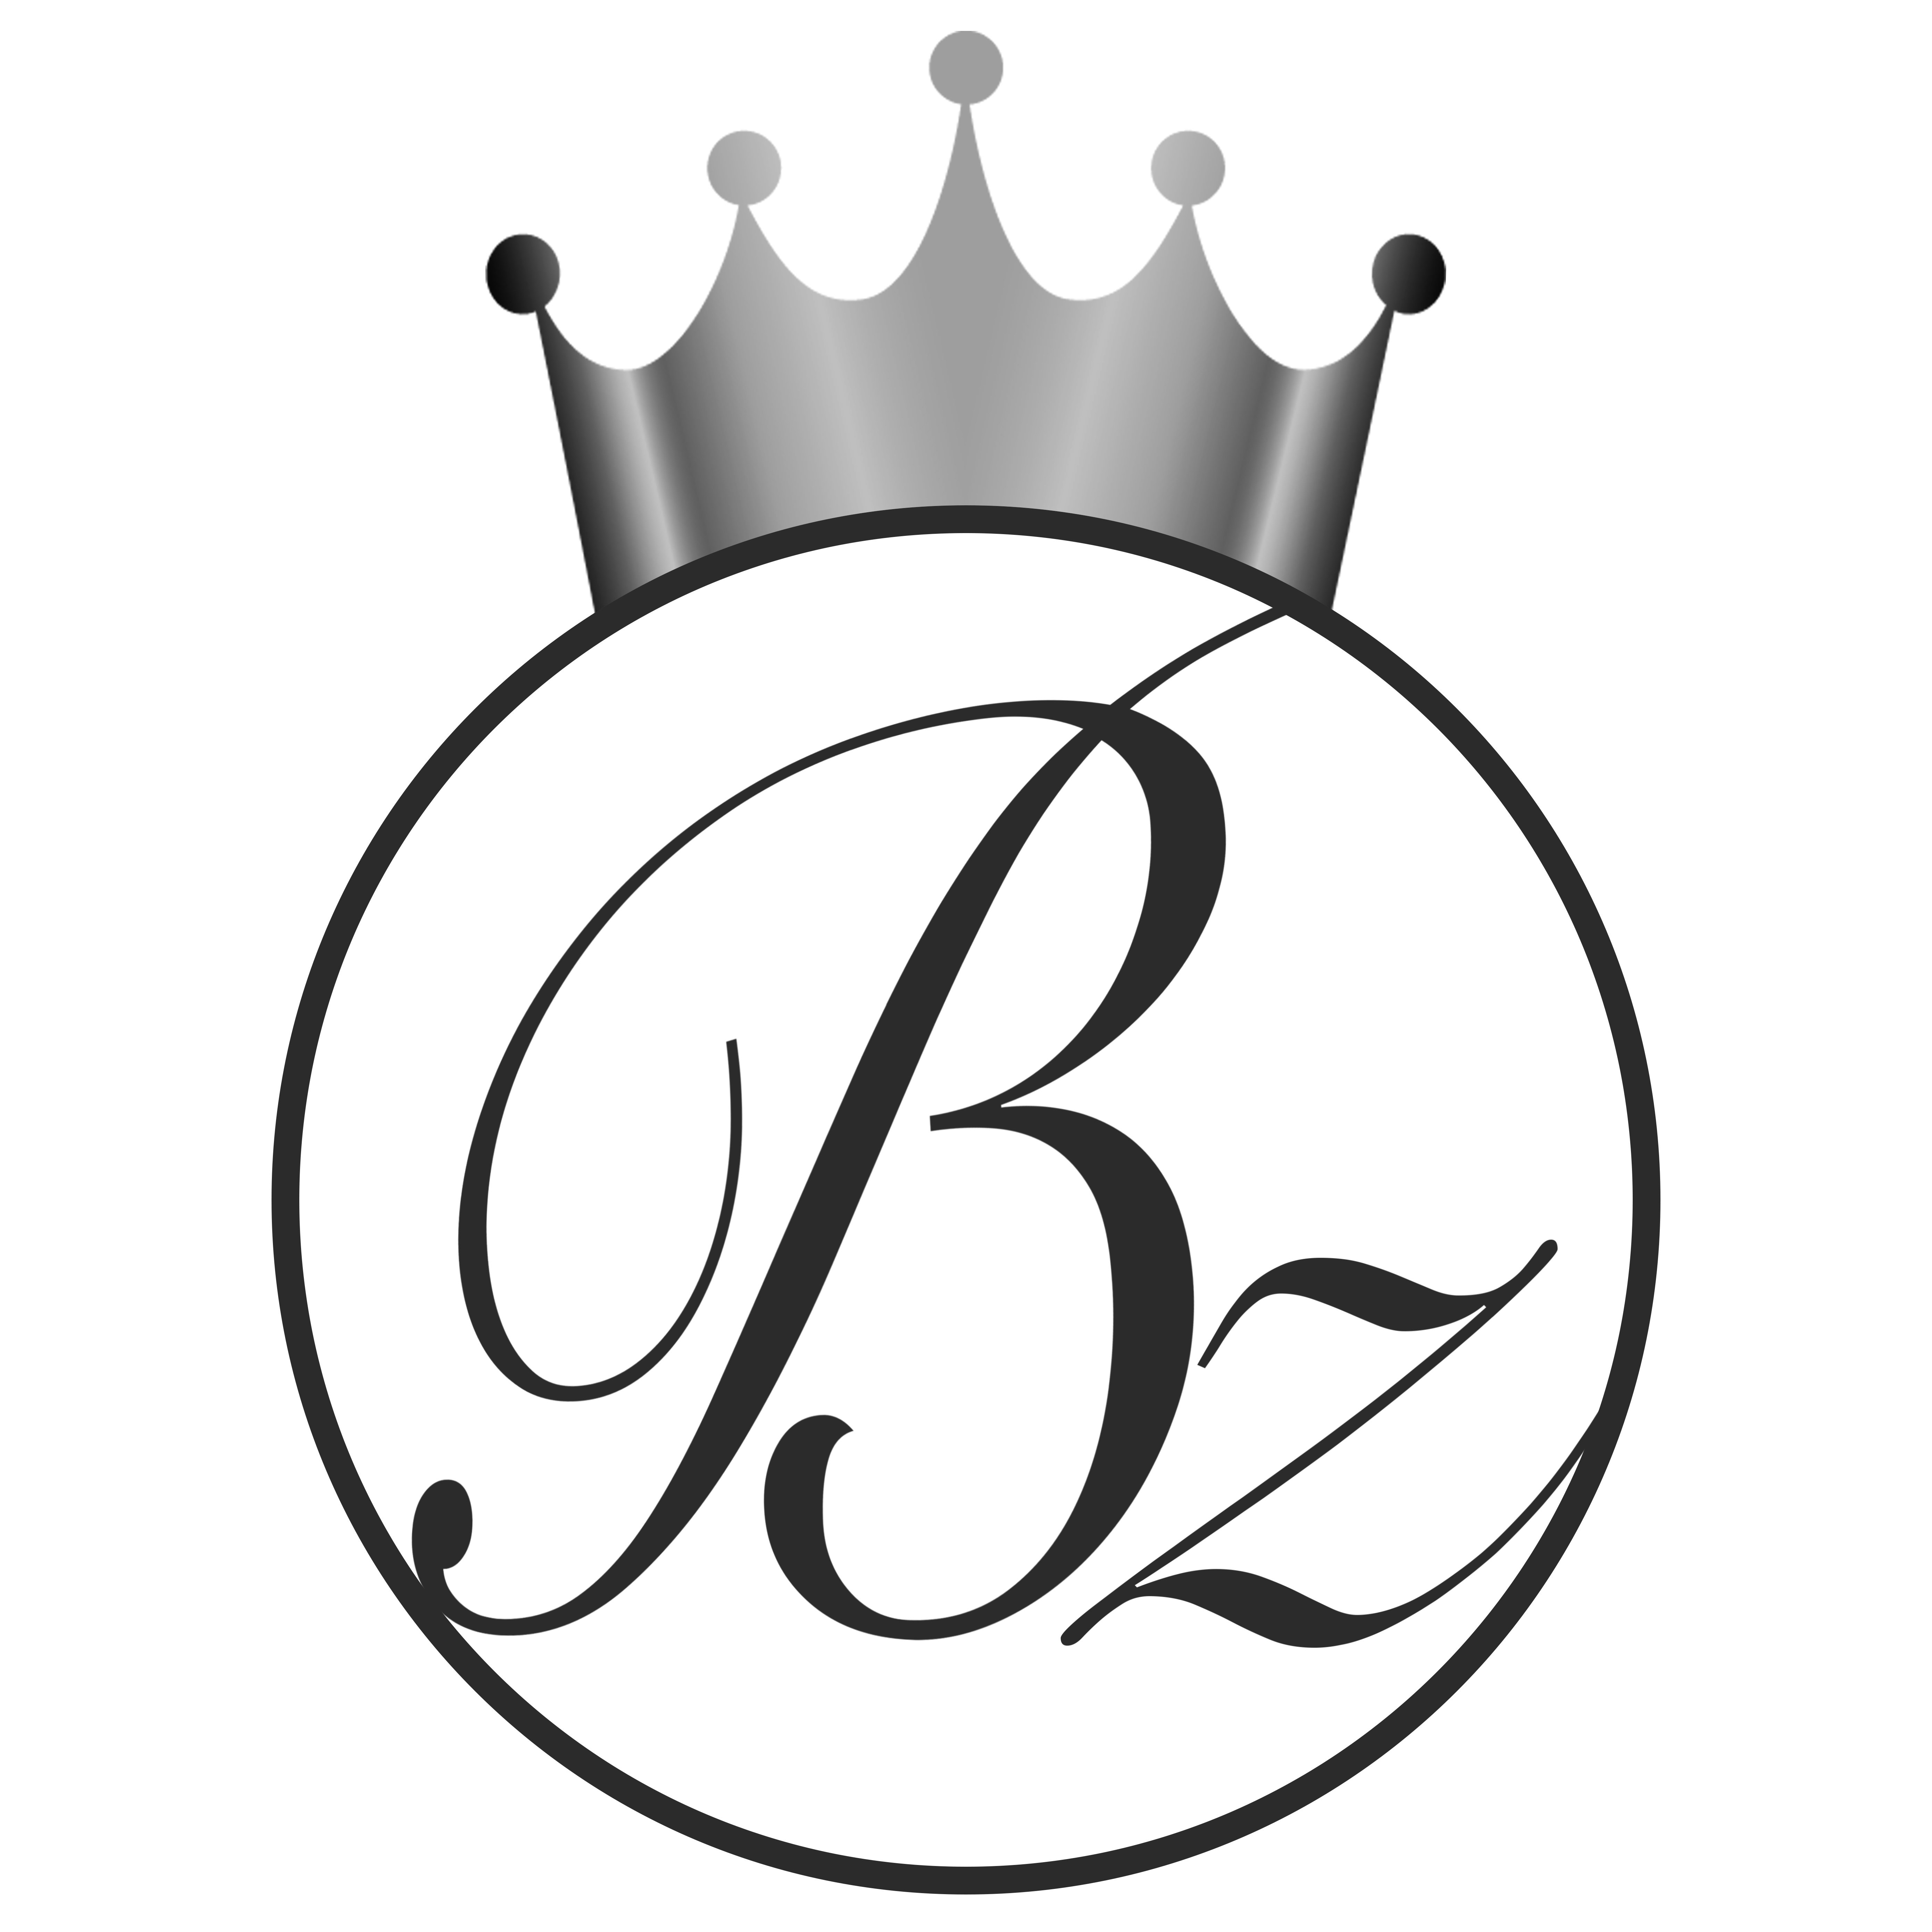 B Z